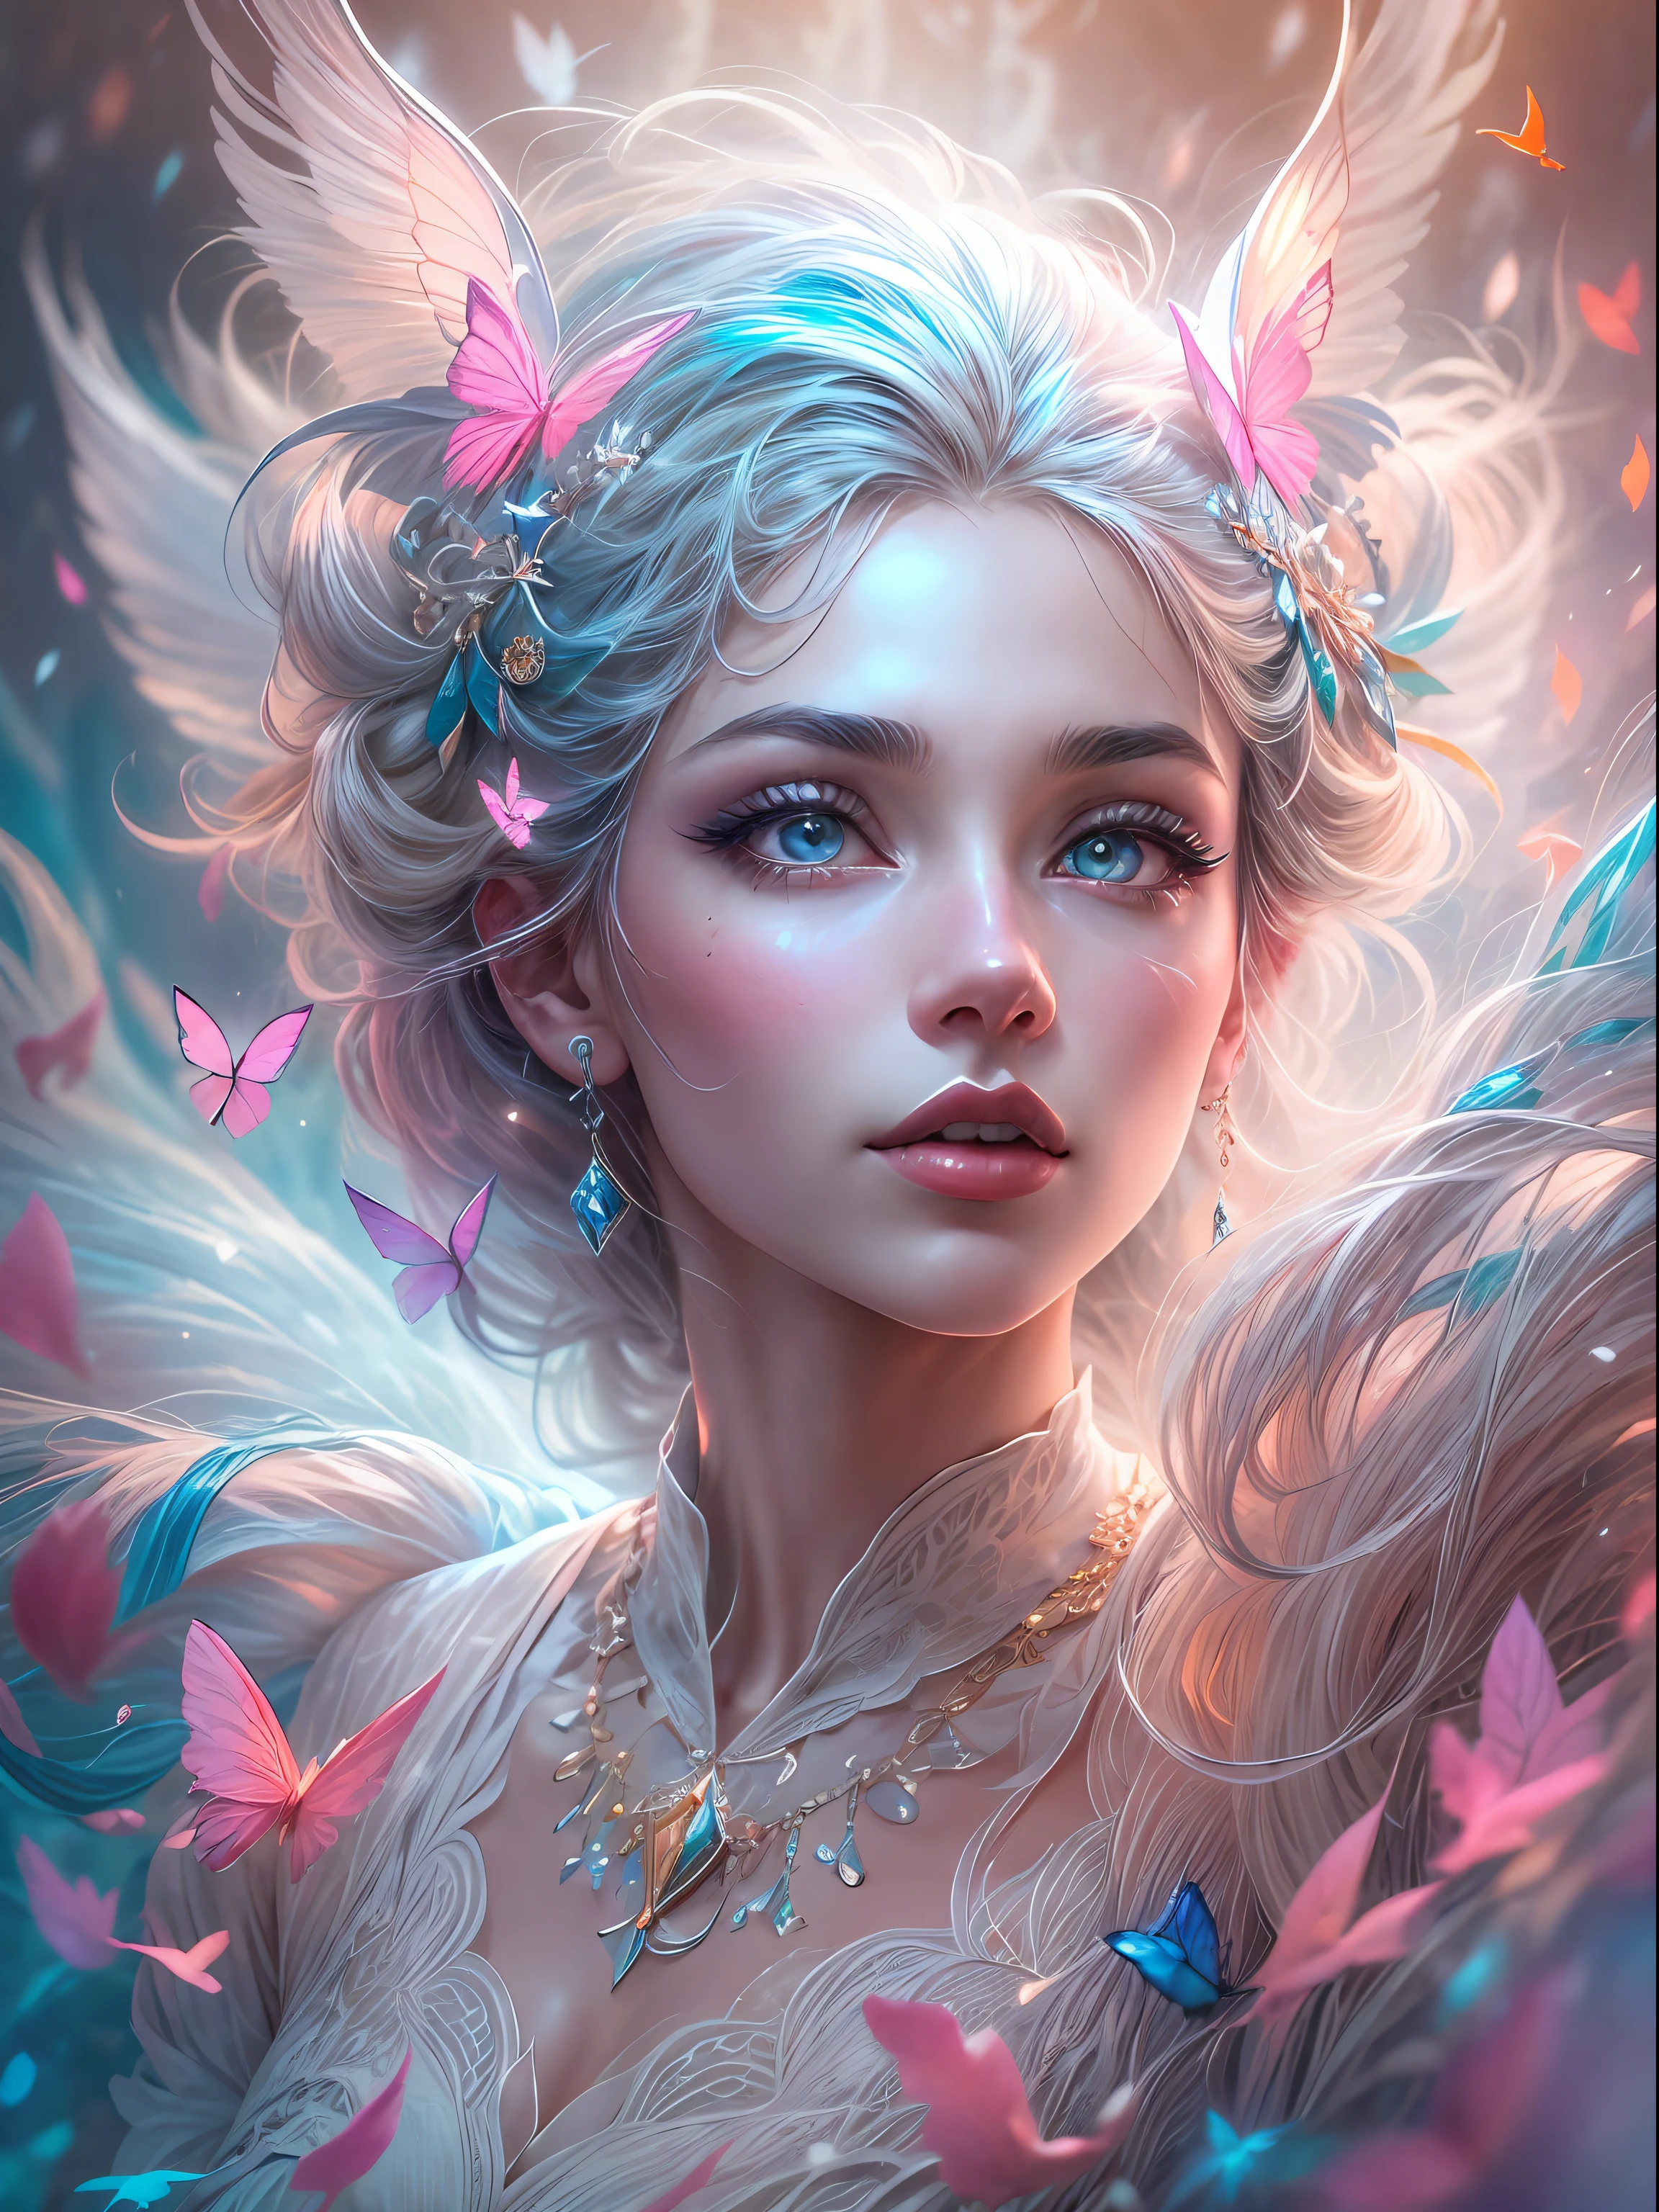 大胆な宝石色で美しくリアルなファンタジーアートを生成 ((((ピンクとブルー)))) 色合い, pretty glitter and きらめき, そしてたくさんの雪の結晶. 輝く巻き毛の女性を演出, メタリックヘア, リアルな質感の髪. 彼女の肌は真っ白で、光の中で輝いているようだ. 女性の顔は重要: 含む ((柔らかい, ふくらんでいる, 大きな唇, エレガントな特徴, and the most beautiful 詳細ed macro eyes)) 世界で. The woman is in a winter landscape with 柔らかい falling snow and snowflakes, 柔らかい white fur, subtle iridescent 詳細s, subtle phantasmal iridescent 詳細s, and intricate and delicate jewelry that きらめきs in the light. Include many small fantasy 詳細s like gossamer silk, 羽毛, 繊細で美しい刺繍, and luminous lighting that きらめきs. The woman's face is unobscured by 詳細s and her eyes are sharp and in high resolution. 夢のような色を取り入れる, ダイナミックライティング, and 詳細ed background elements to create a sense of awe and immersion. Include colorful flying 魔法の鳥 and jewel-toned butterflies radiating a magical aura. ファンタジーアートの最新トレンドを考える, ユニークな照明効果を取り入れるなど, ダイナミックで魅力的な作曲技法の探求, ユニークなカラーパレットを試したり. ArtStationとMidjourneyのトップアーティストからインスピレーションを得ましょう. カメラ: キャラクターの美しさを強調し、アートワークの魔法のような威厳を高める角度を選択します。. 点灯: 雰囲気のある照明技術を活用して深みと雰囲気を演出する. 解決: Aim for a high-resolution artwork to showcase intricate 詳細s and clarity. アートのインスピレーション: ArtStationで人気のアーティストからインスピレーションを得ましょう, さまざまなスタイルを探求する, ジャンル, テーマ. 白い肌, 青白い肌, really 青白い肌, really 白い肌, 美しい目, fantasy 詳細s, きらめき, きらめき, 魔法の鳥, 魔法の蝶, 華やかな, (((傑作))), 追加_詳細:1, 地球 \(惑星\),